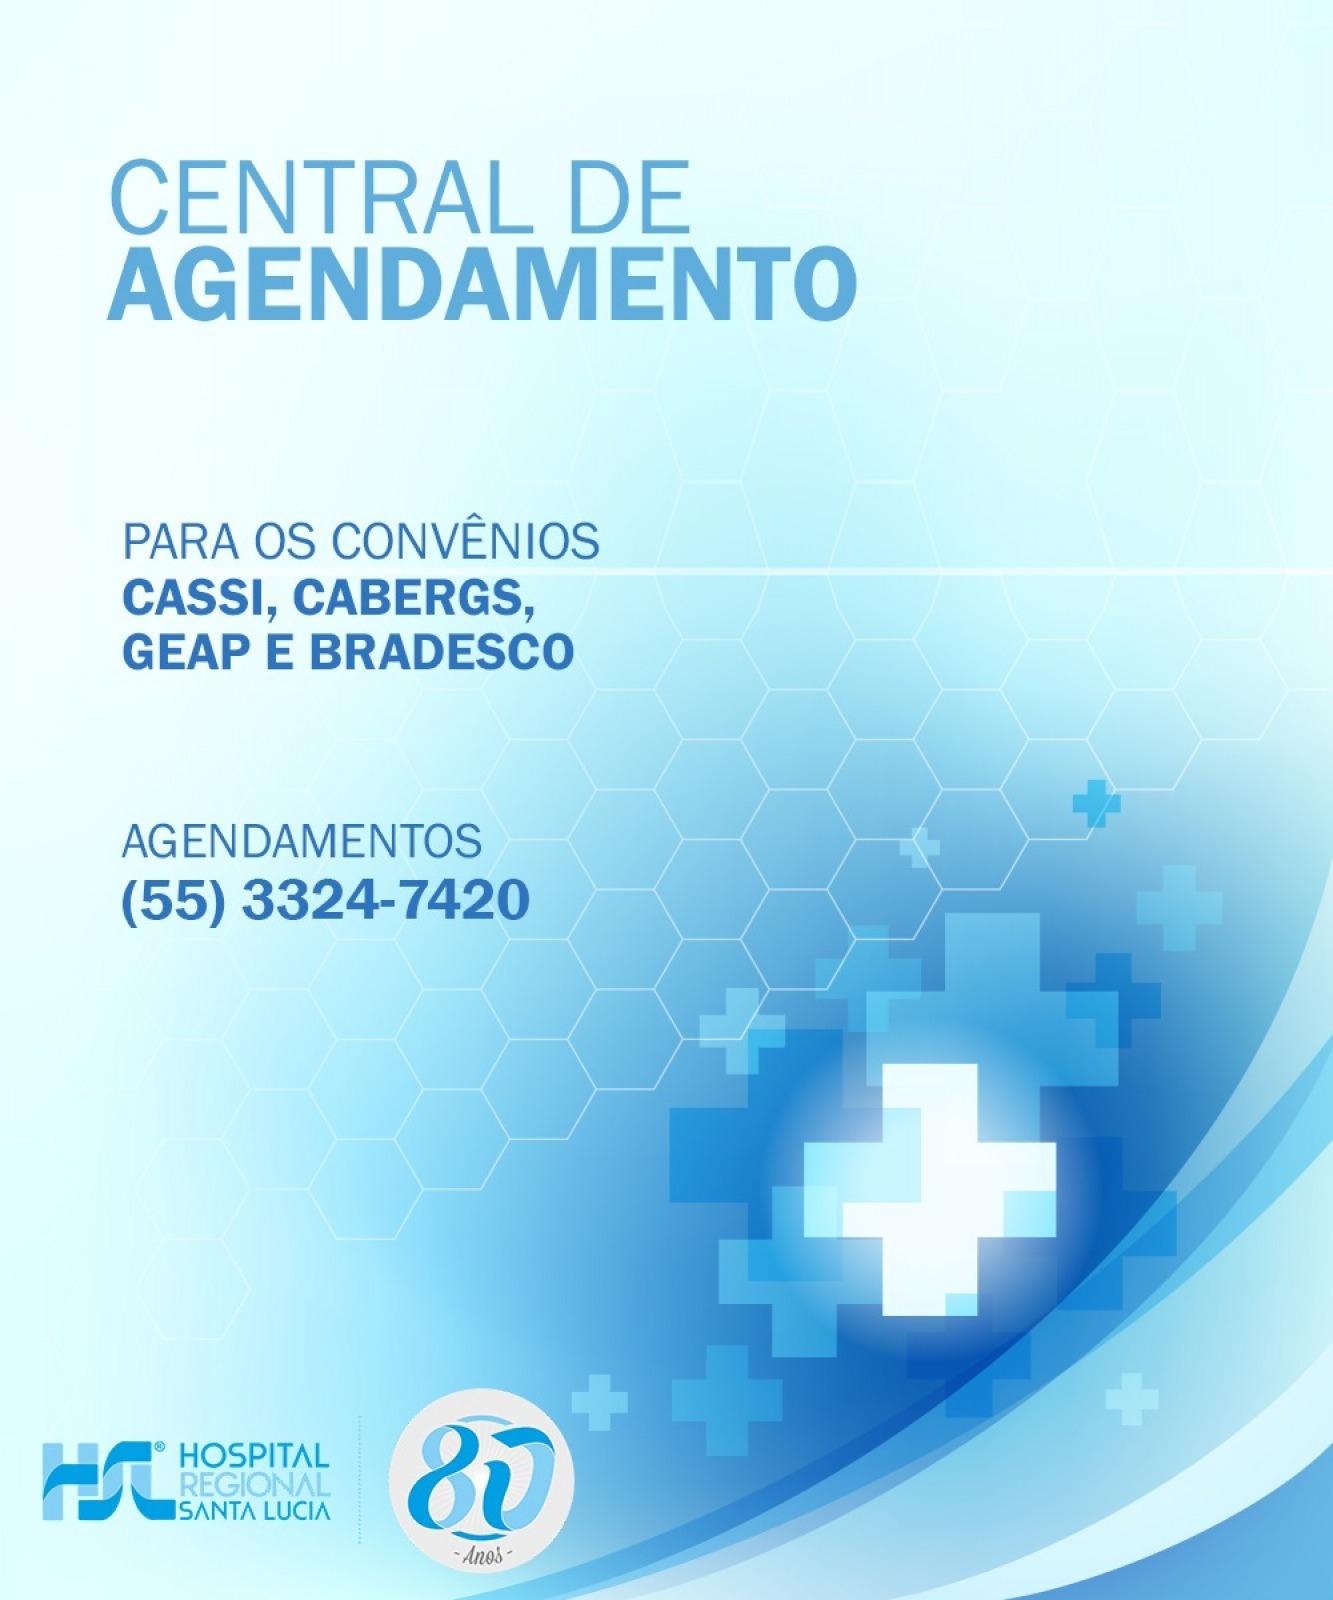 Central de Agendamento para os convênios CASSI, CABERGS, GEAP e Bradesco